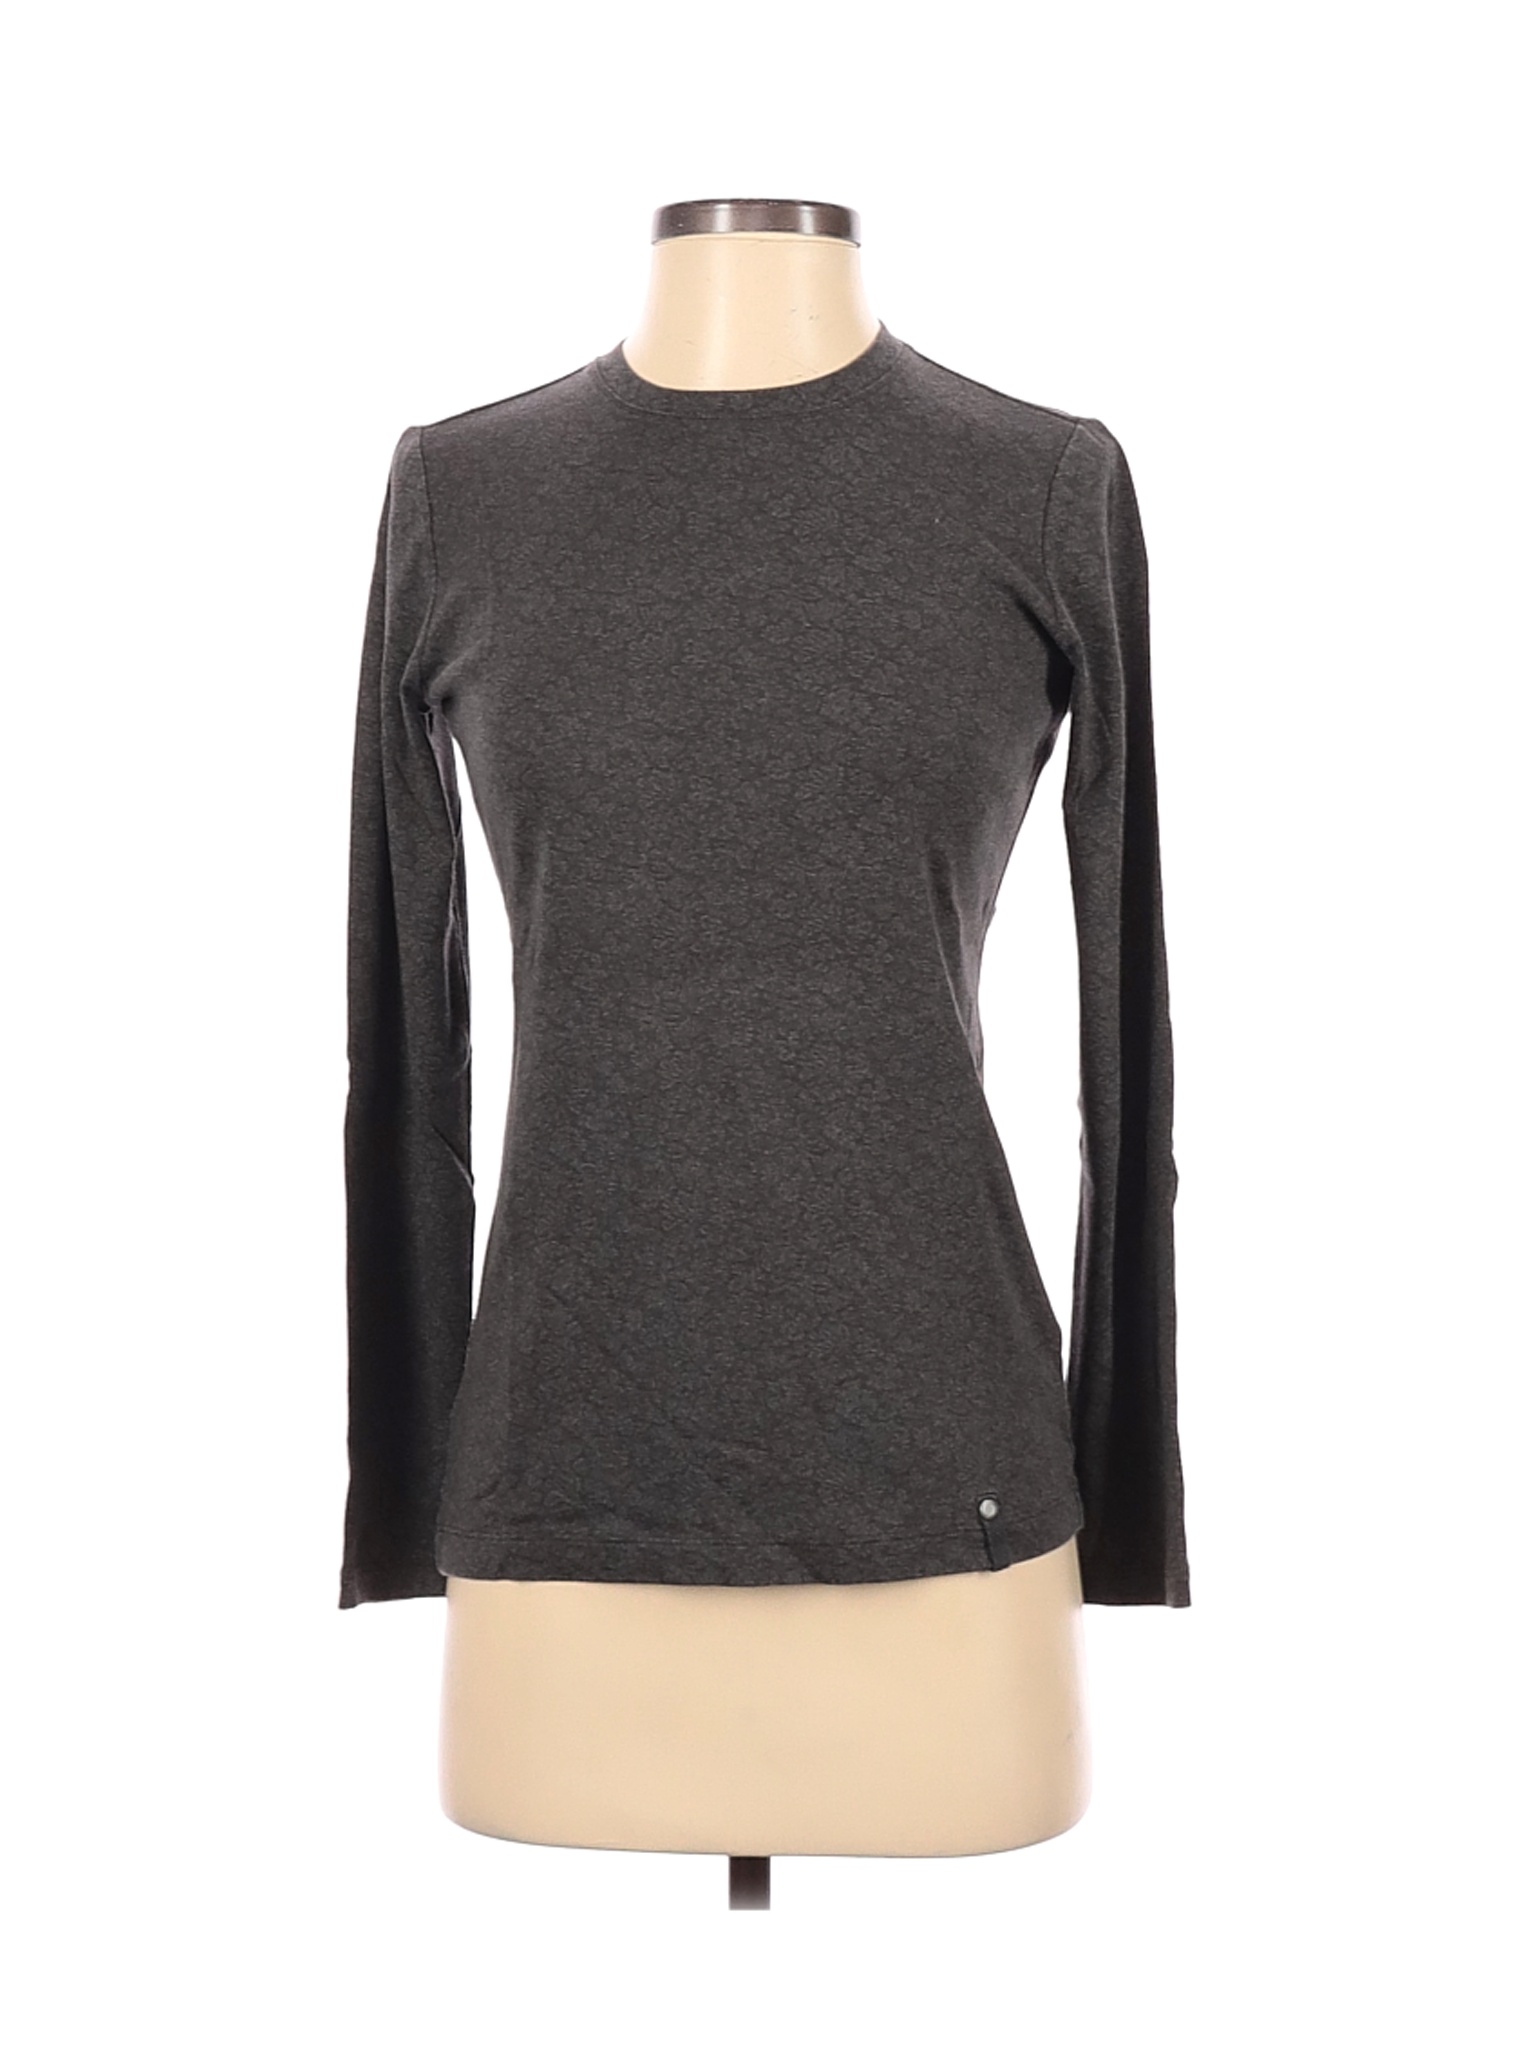 Ruff Hewn Women Gray Long Sleeve T-Shirt S | eBay